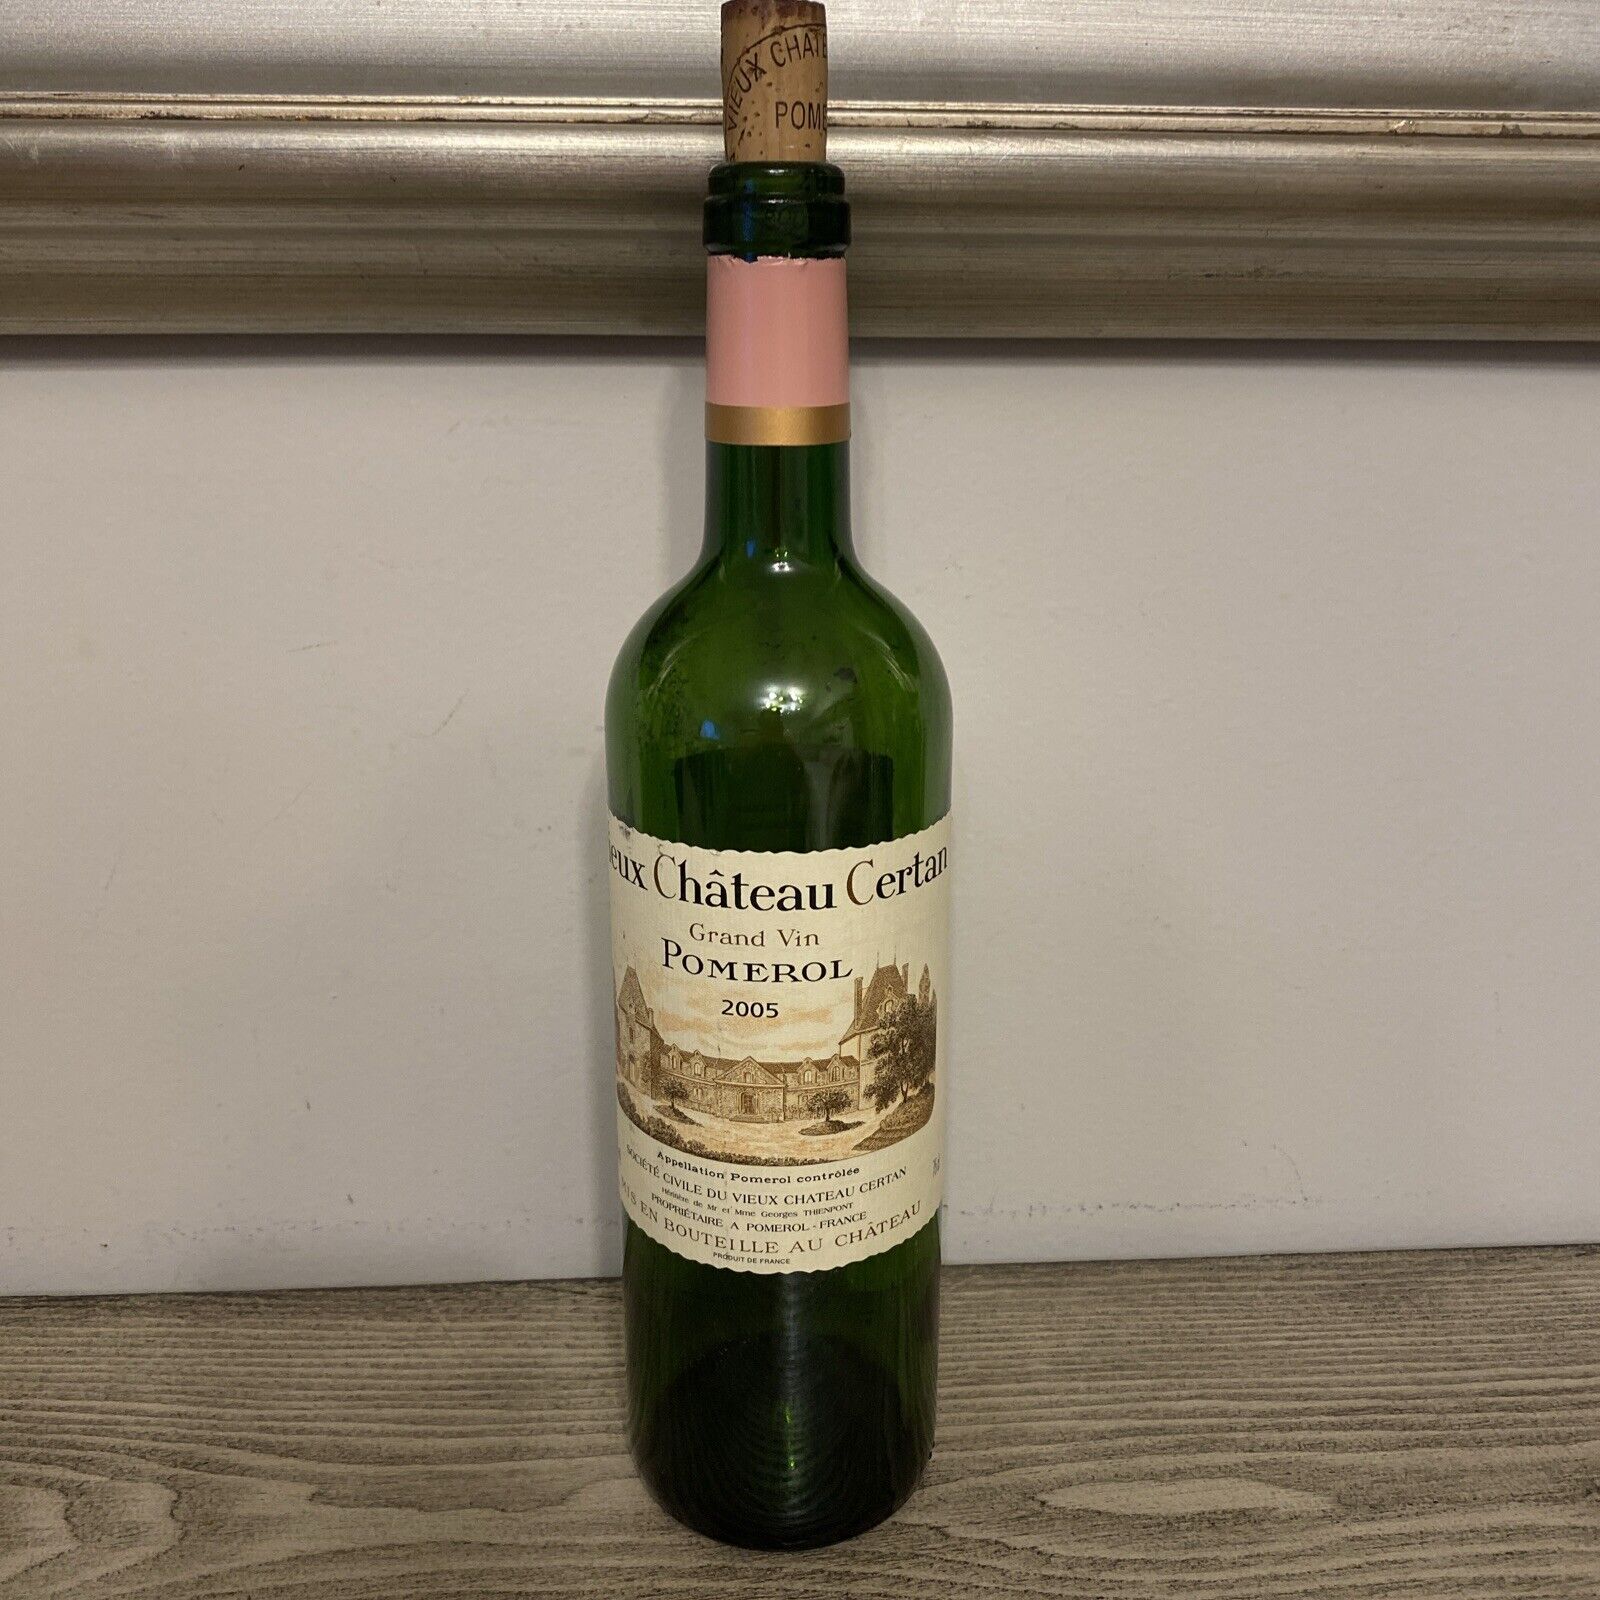 2005 Vieux Chateau Certan Pomerol Empty Bottle With Cork